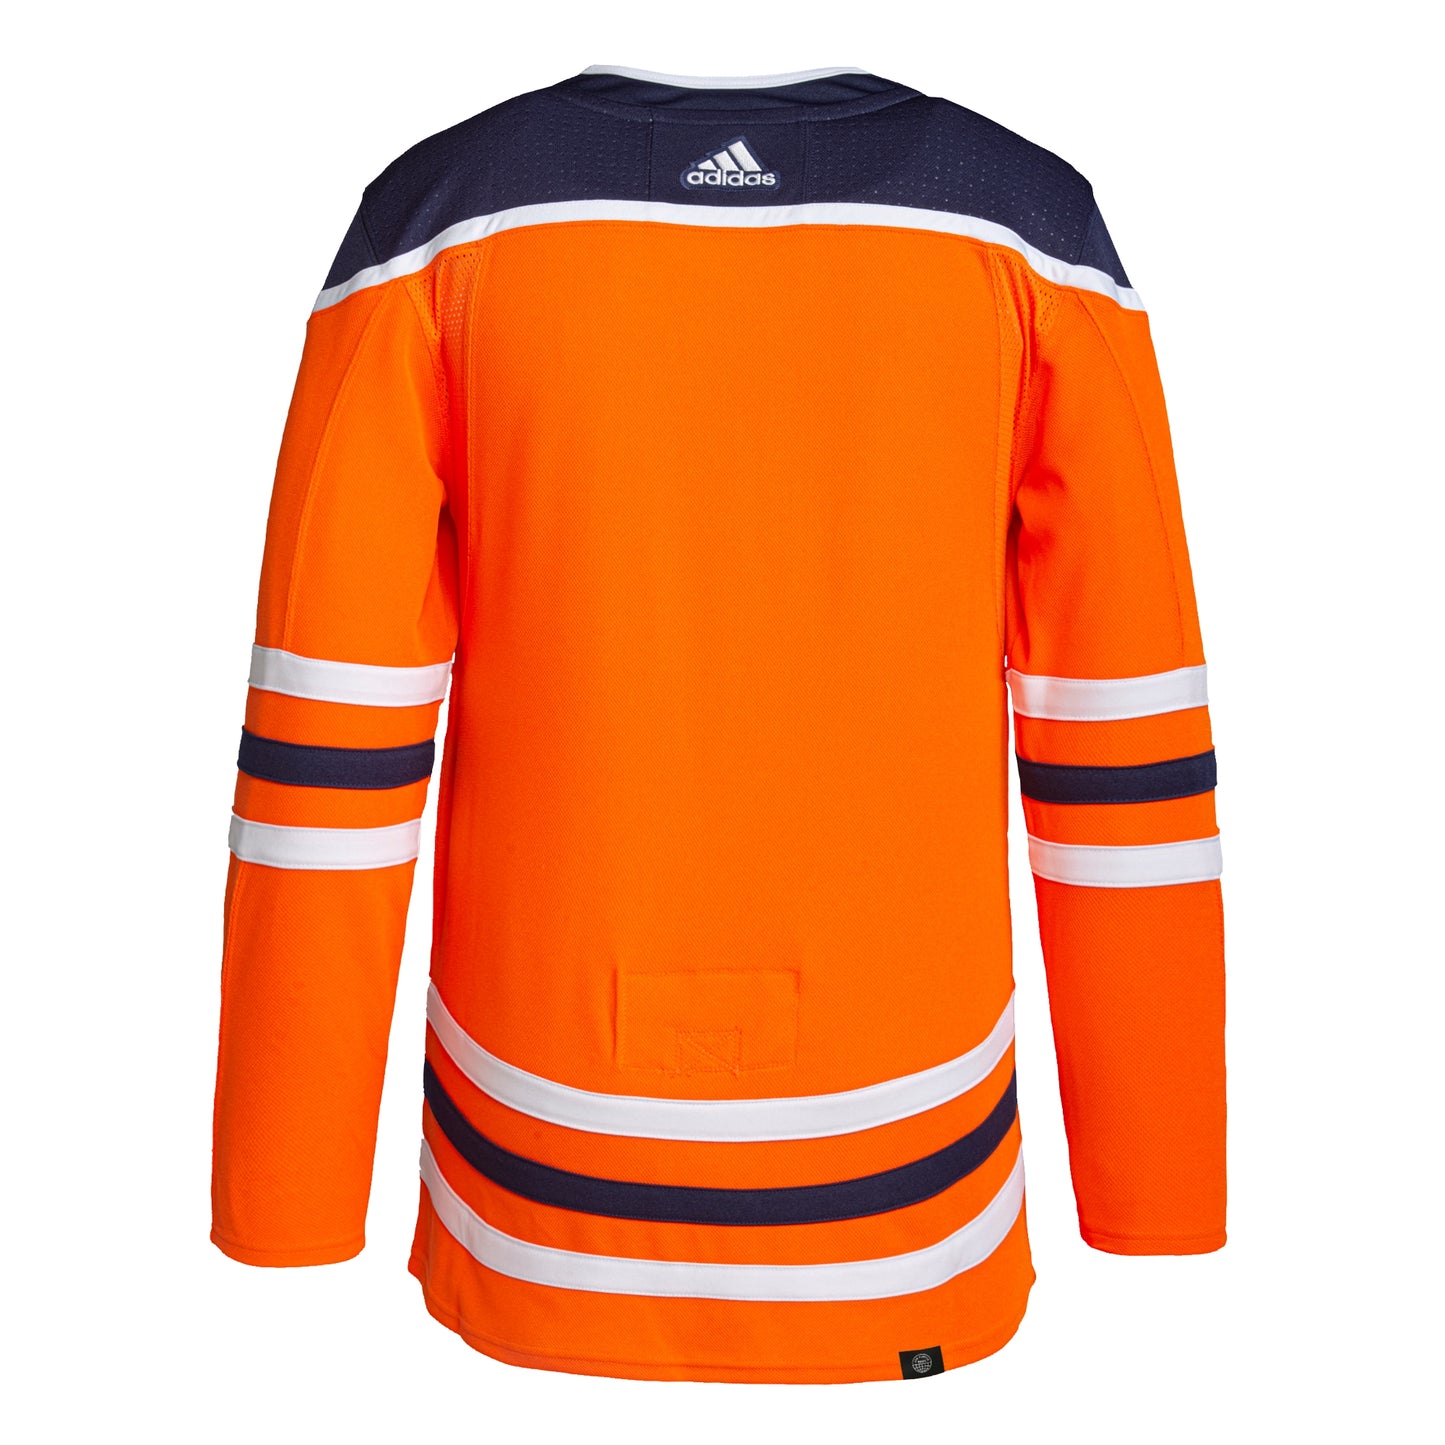 Edmonton Oilers adidas Home Authentic Pro Jersey - Orange